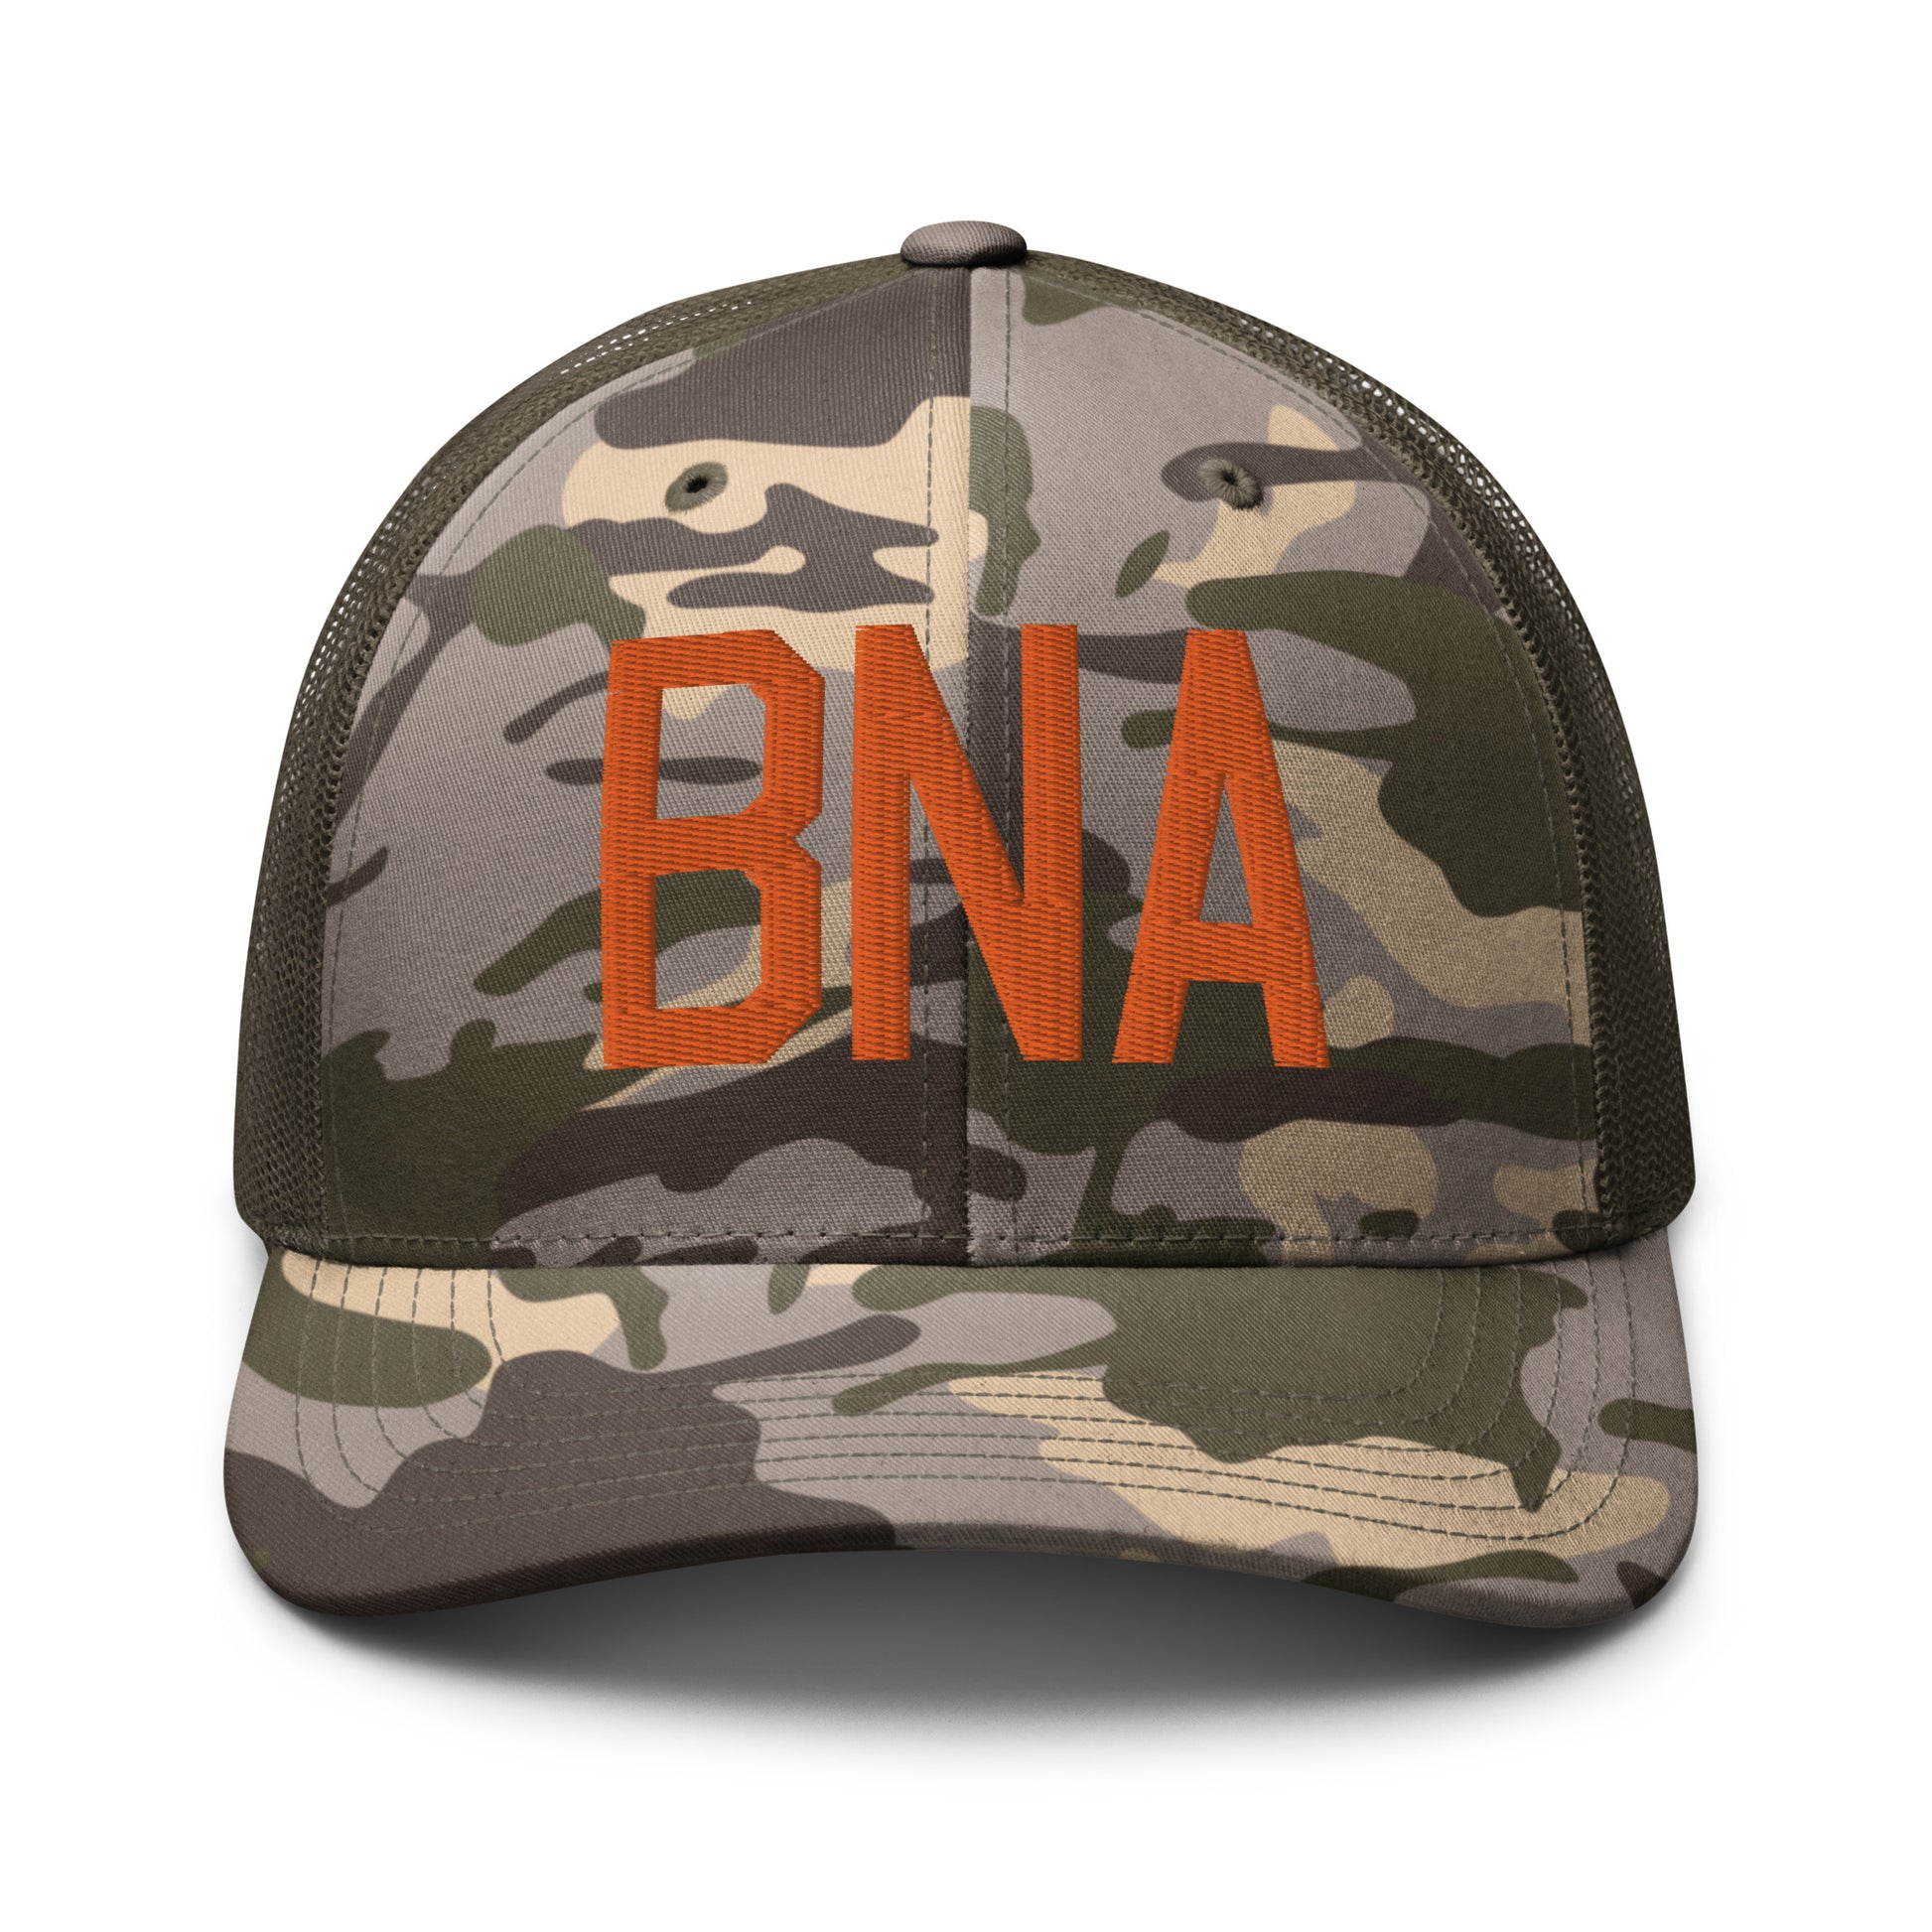 Airport Code Camouflage Trucker Hat - Orange • BNA Nashville • YHM Designs - Image 17